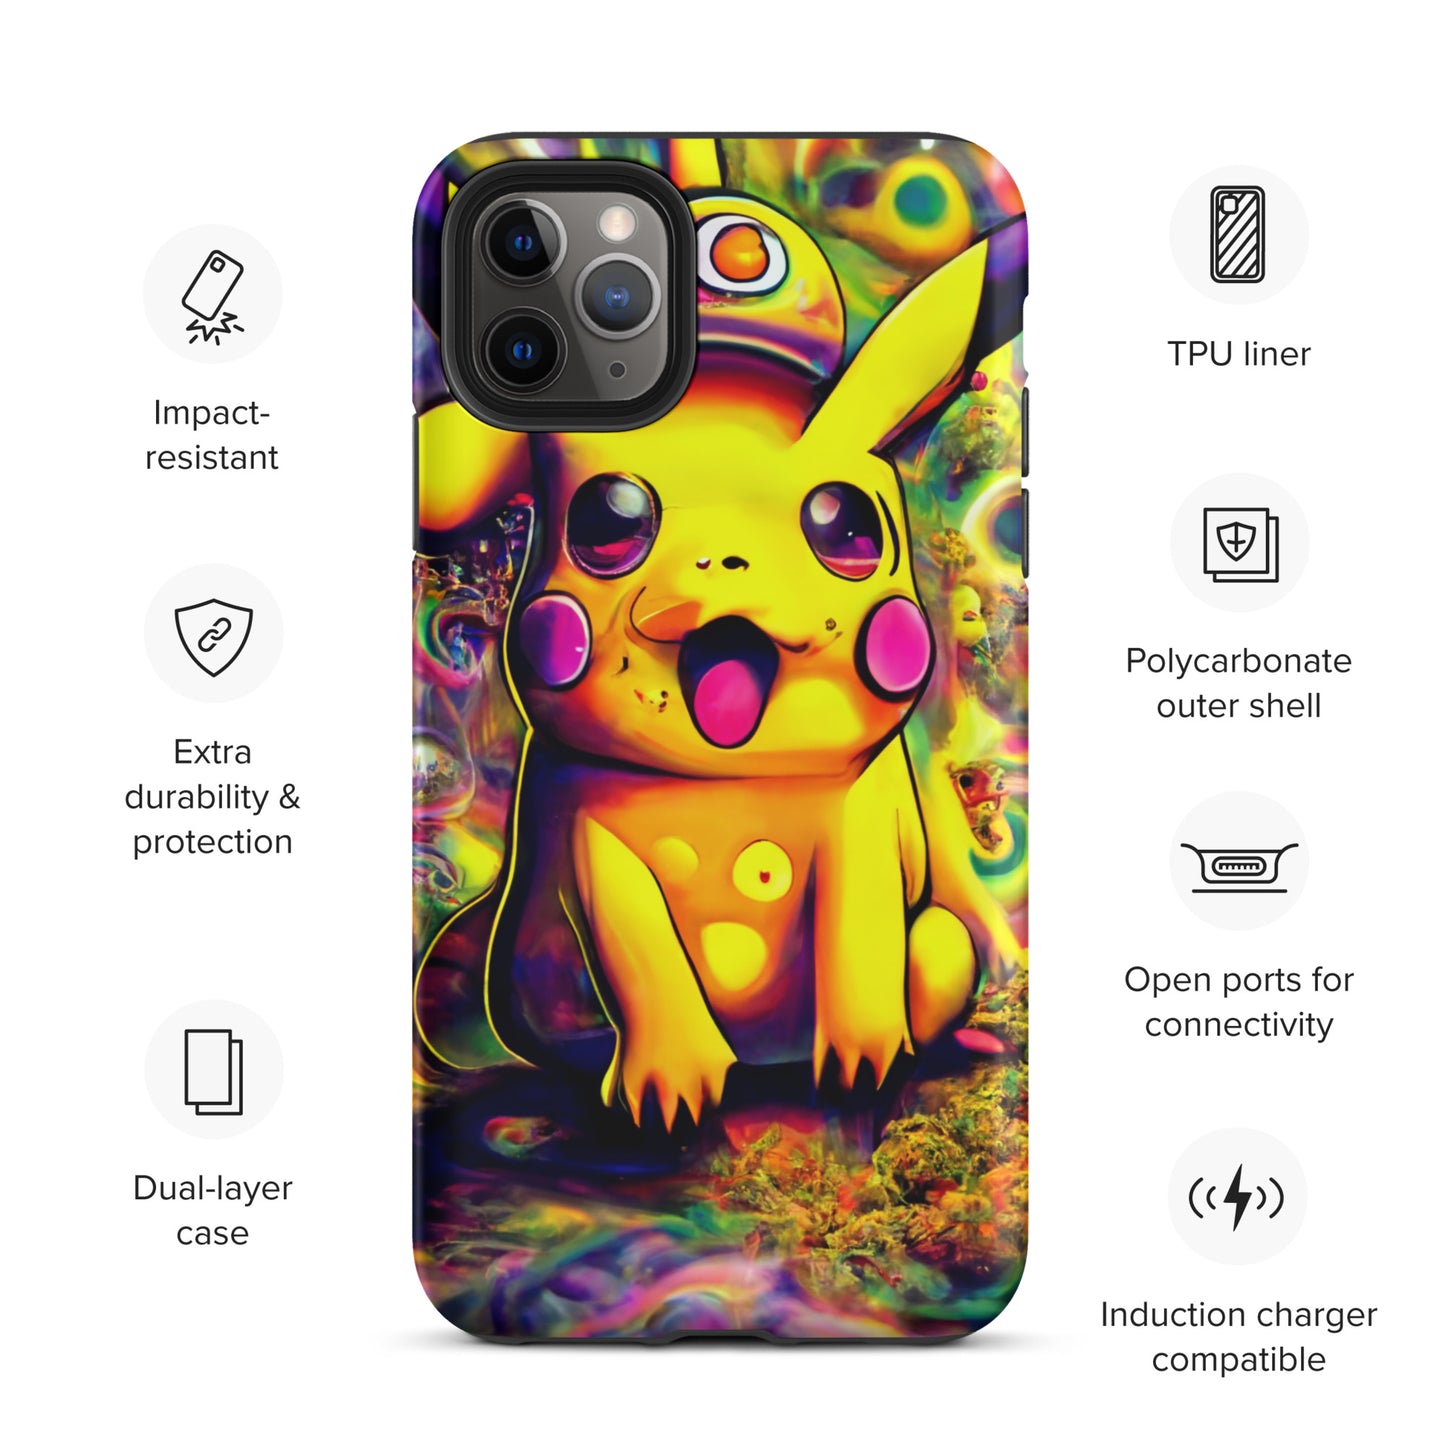 Pikachu Trip 1.0 Tough iPhone case